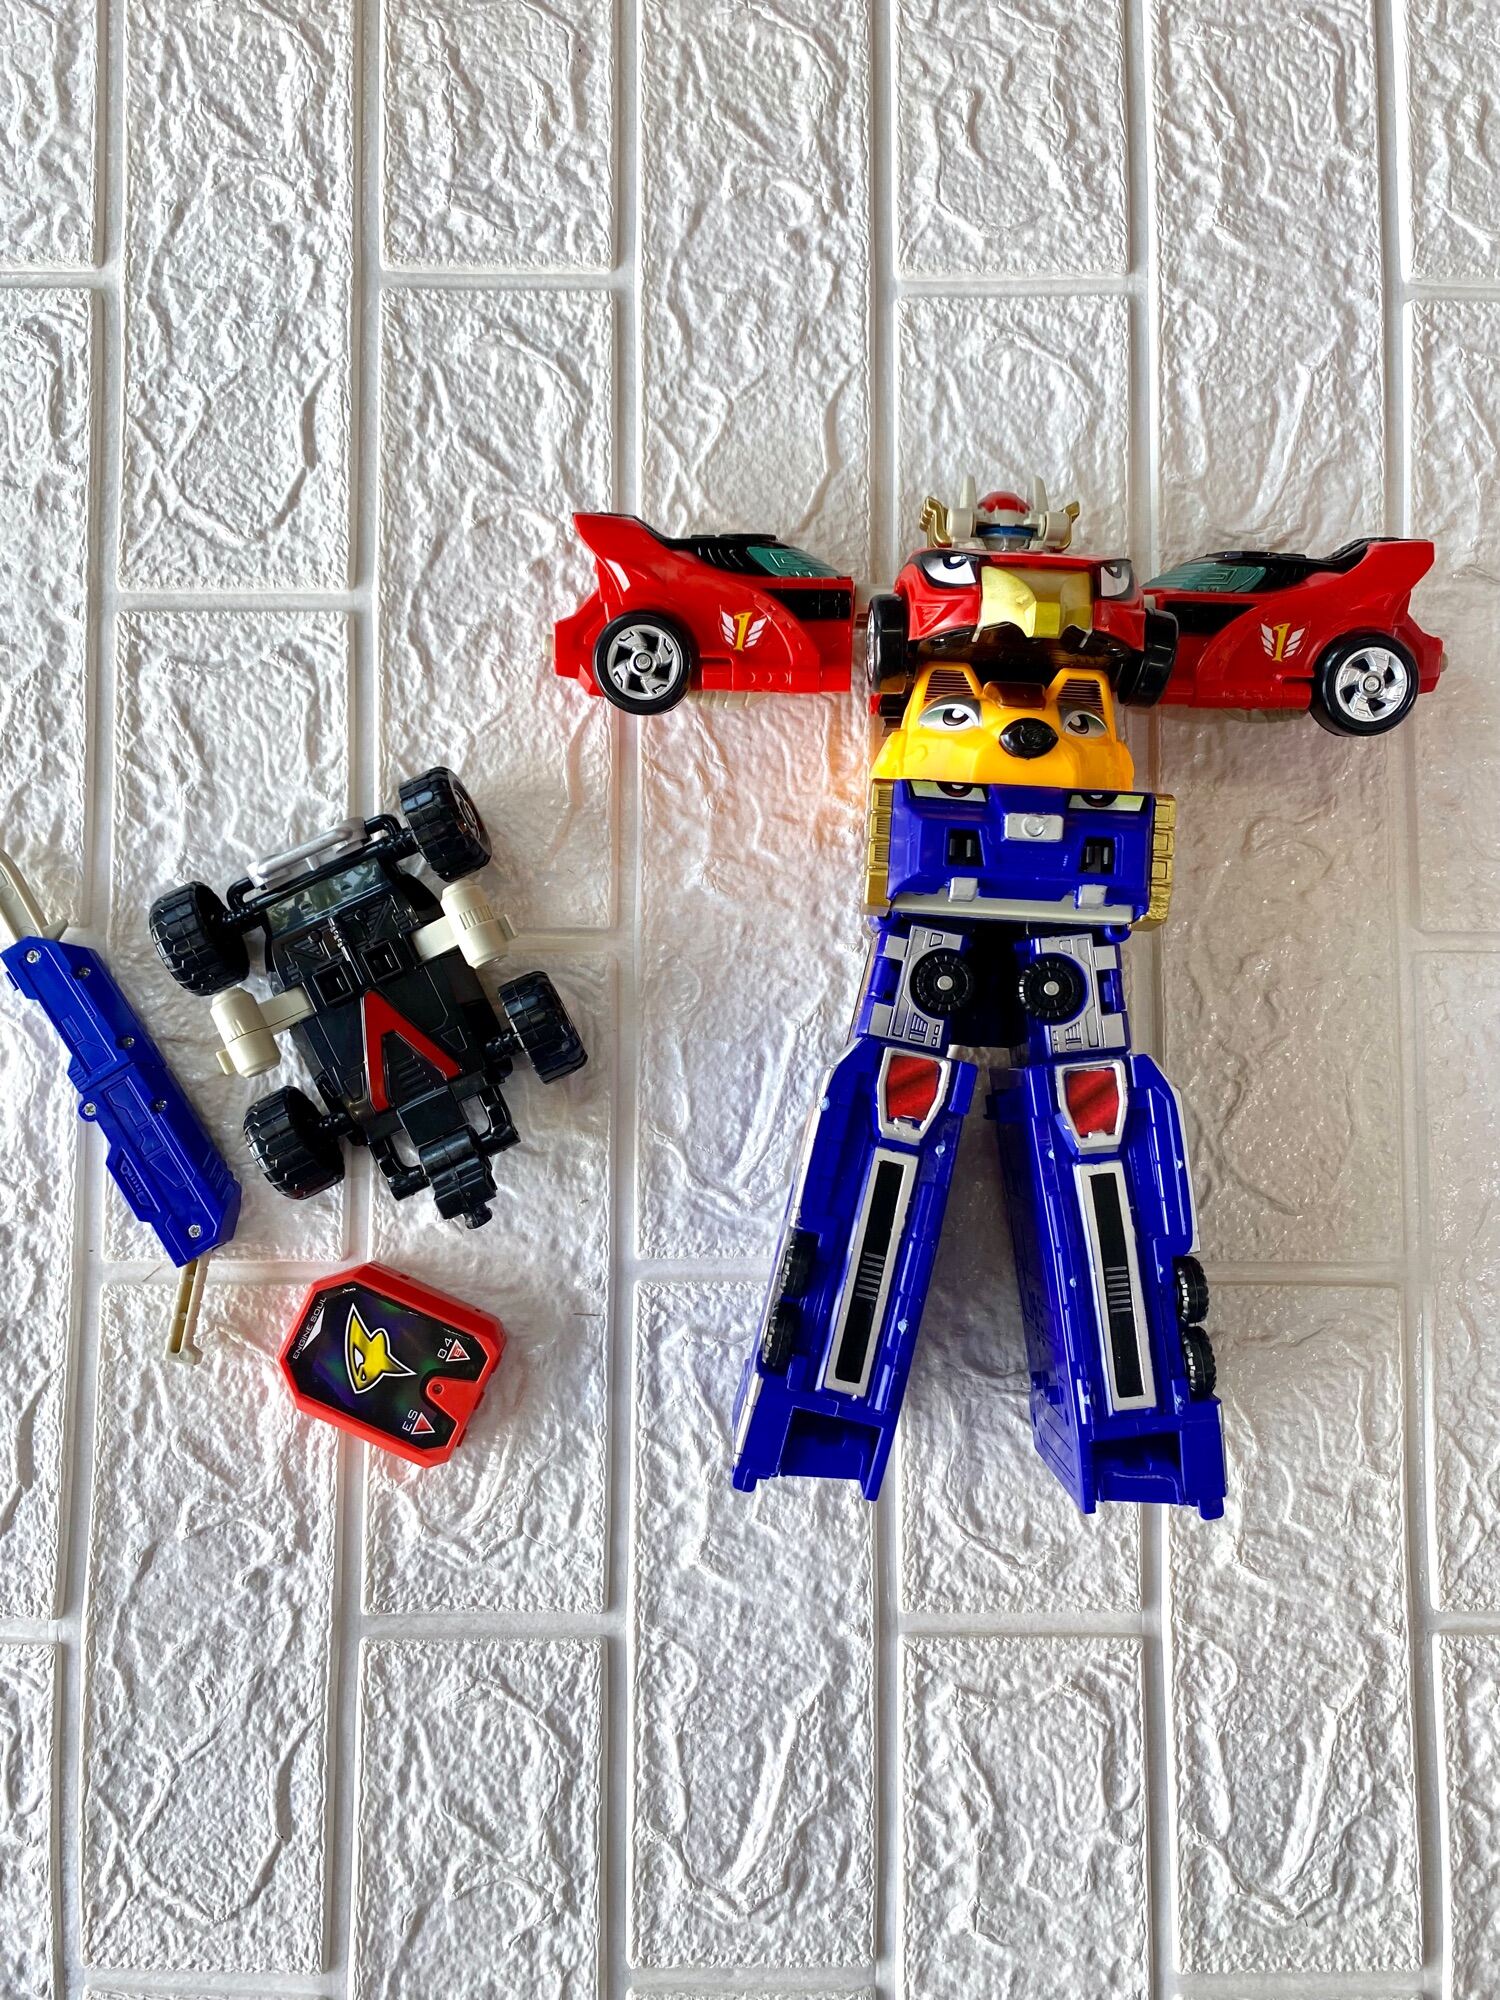 Đồ chơi trẻ em, mô hình tháo lắp siêu nhân cơ động Super Rangers RPM , đồ chơi ô tô tháo lắp biến hình cho bé thoả sức sáng tạo thành hình các siêu nhân hoặc xe kích thích trí tò mò phát triển trí não cho trẻ